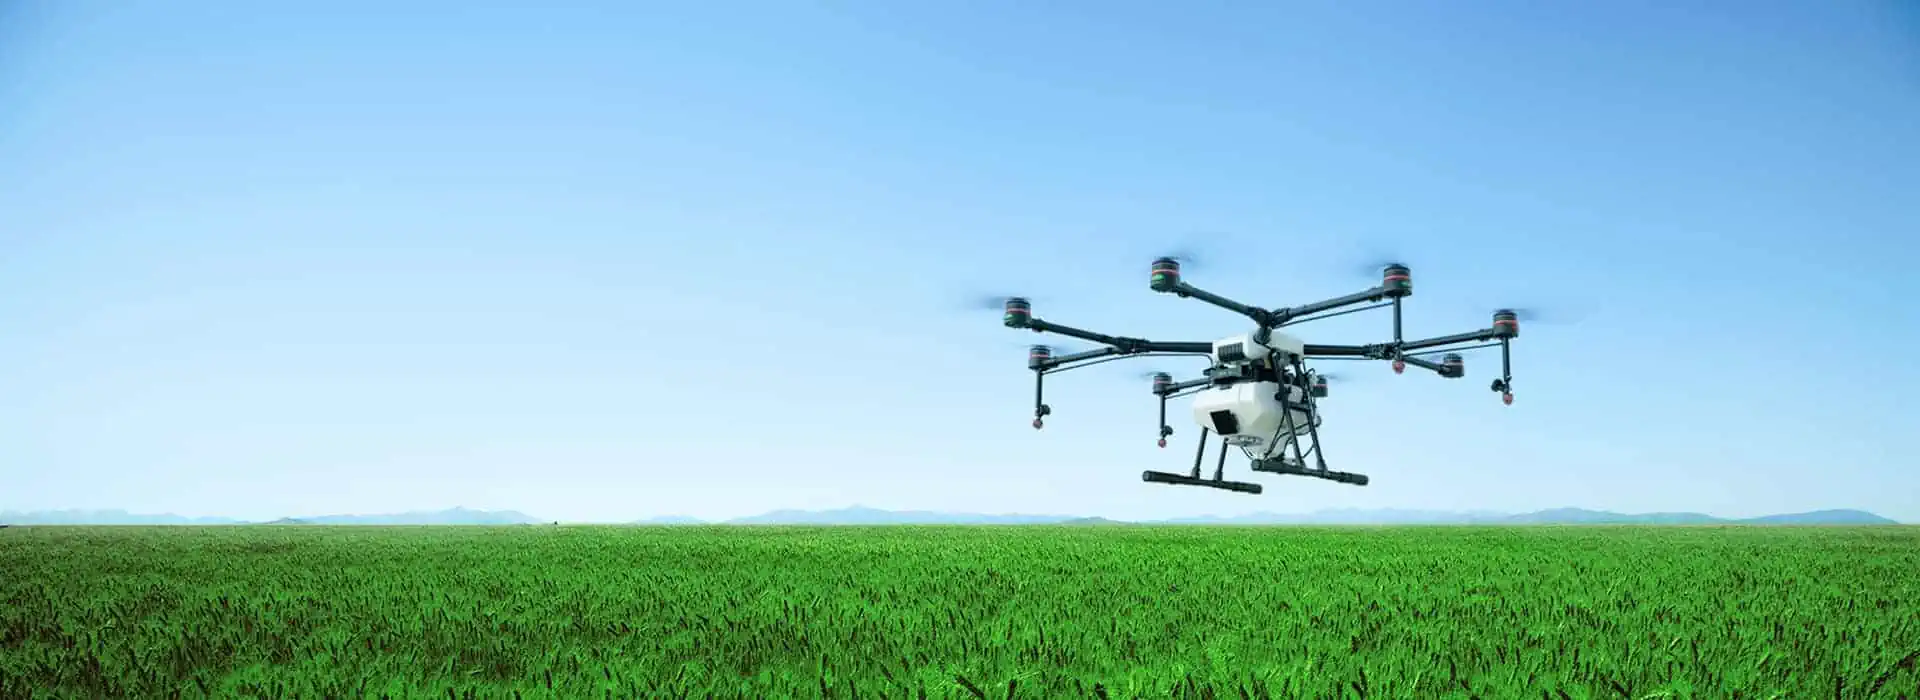 Il drone agricolo Agras Mg-1S